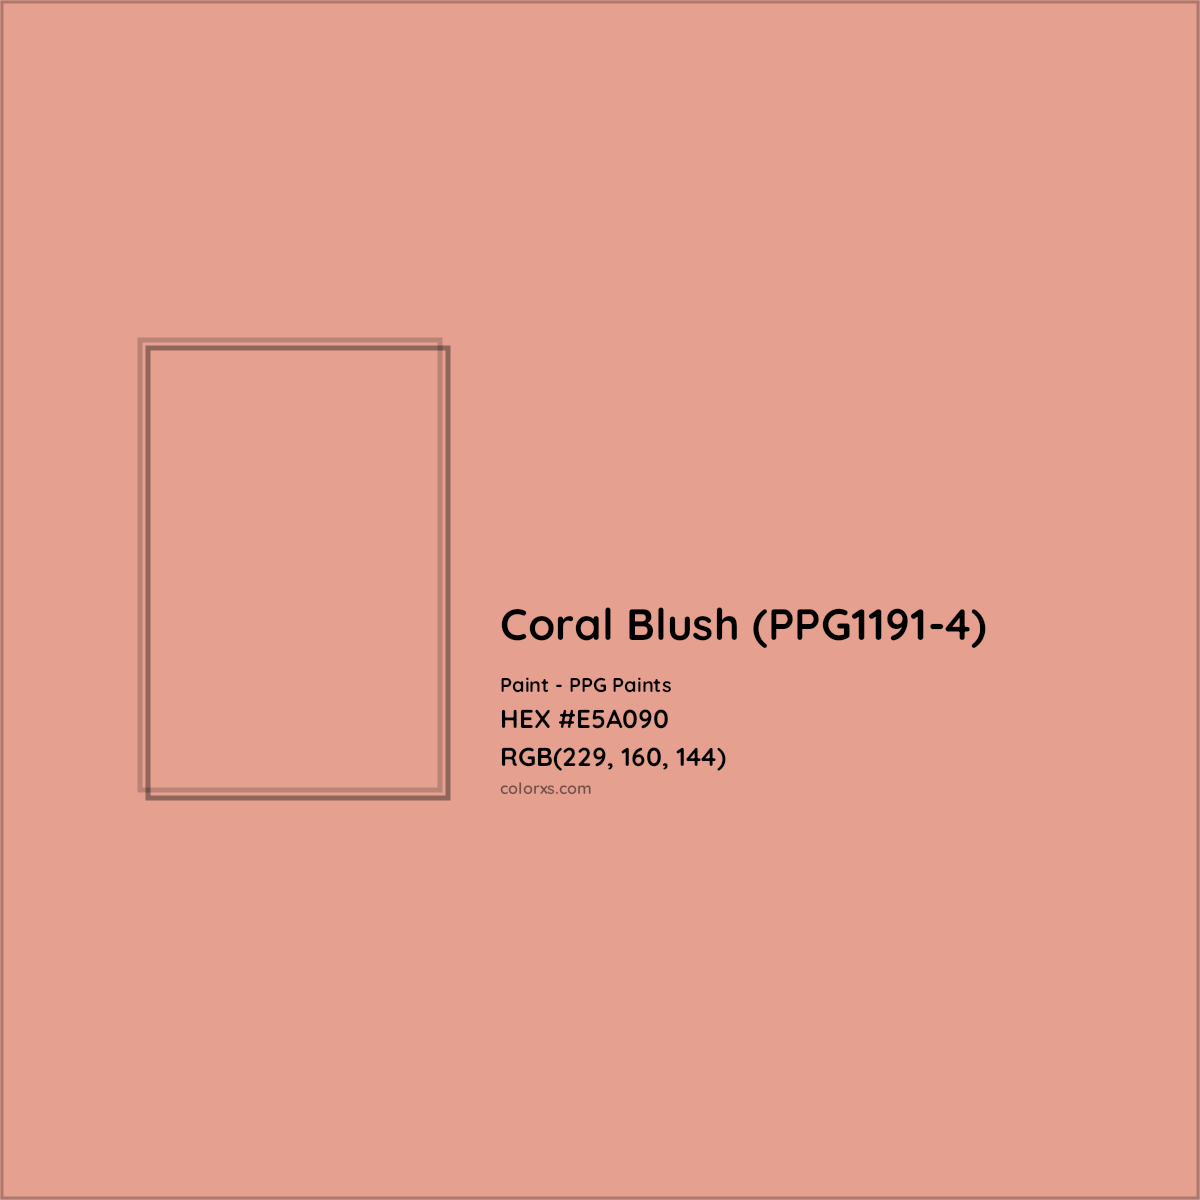 HEX #E5A090 Coral Blush (PPG1191-4) Paint PPG Paints - Color Code